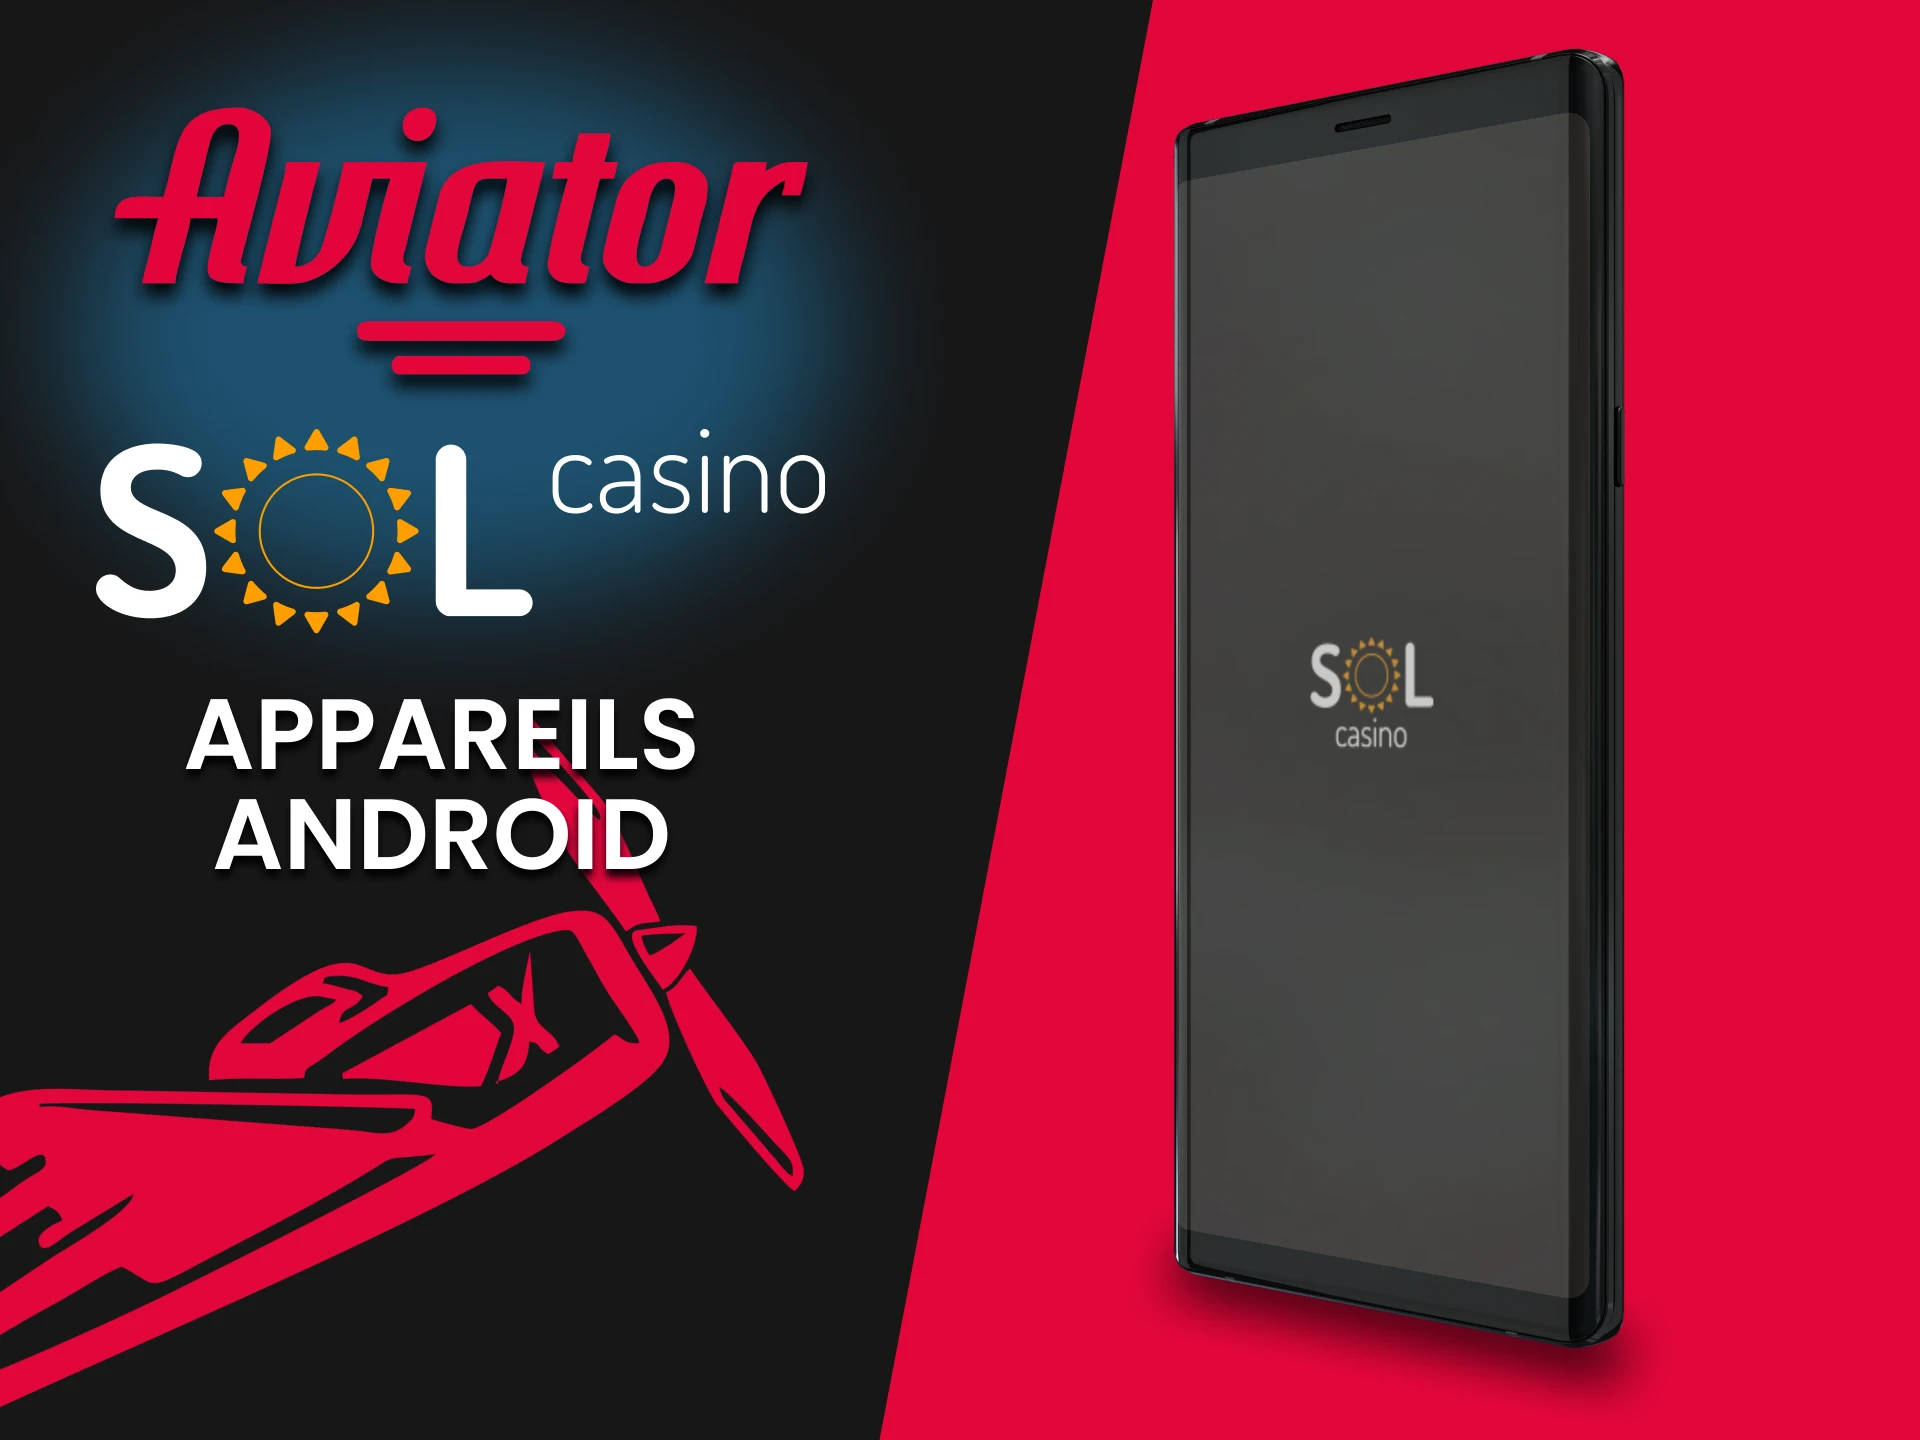 Installez l'application Sol Casino pour jouer à Aviator sur les appareils Android.